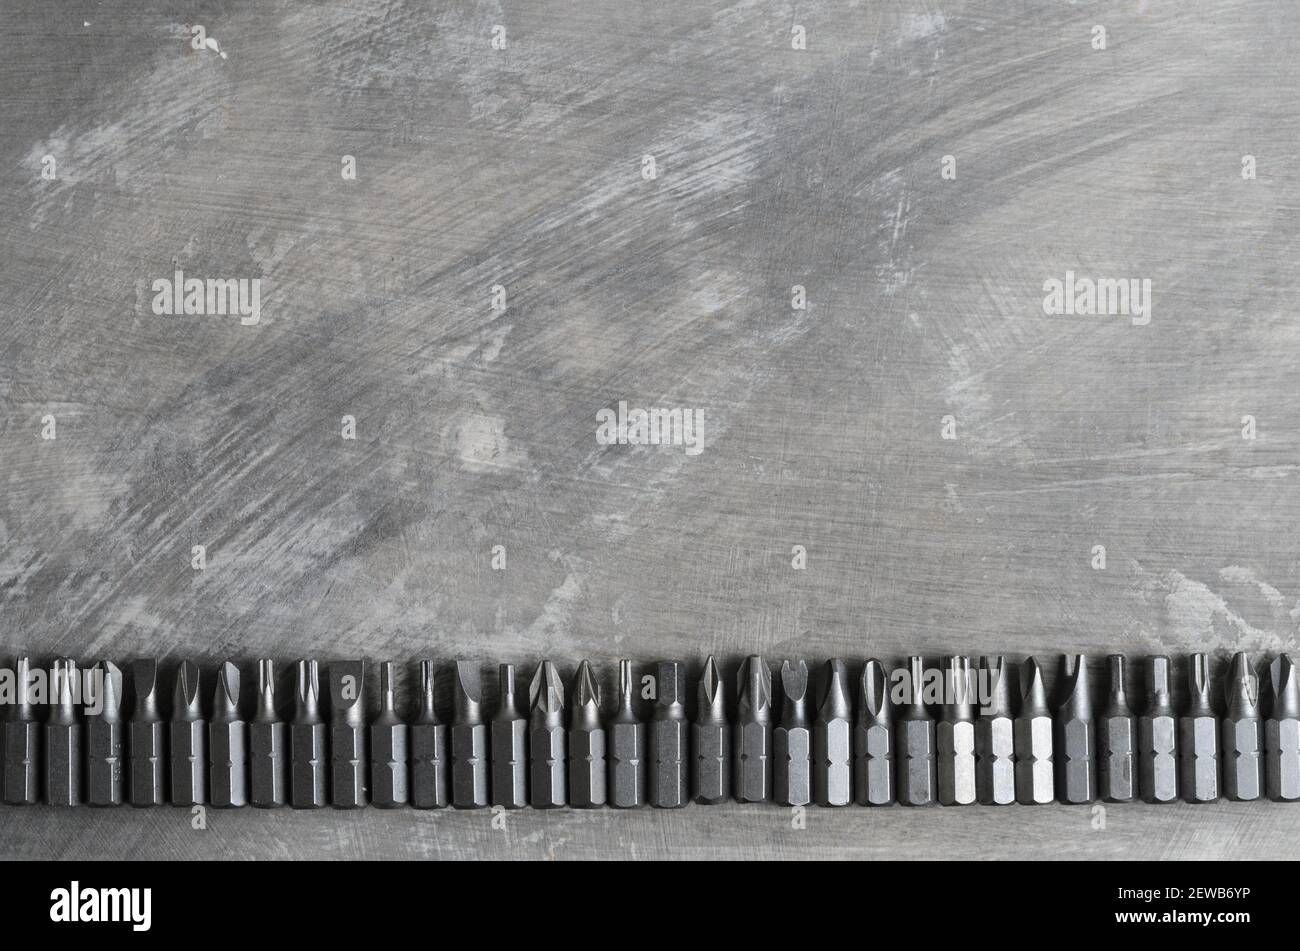 Schraubendreherbits für verschiedene Schlitze, die in einer Reihe auf einer grauen Betonoberfläche angeordnet sind. Stockfoto